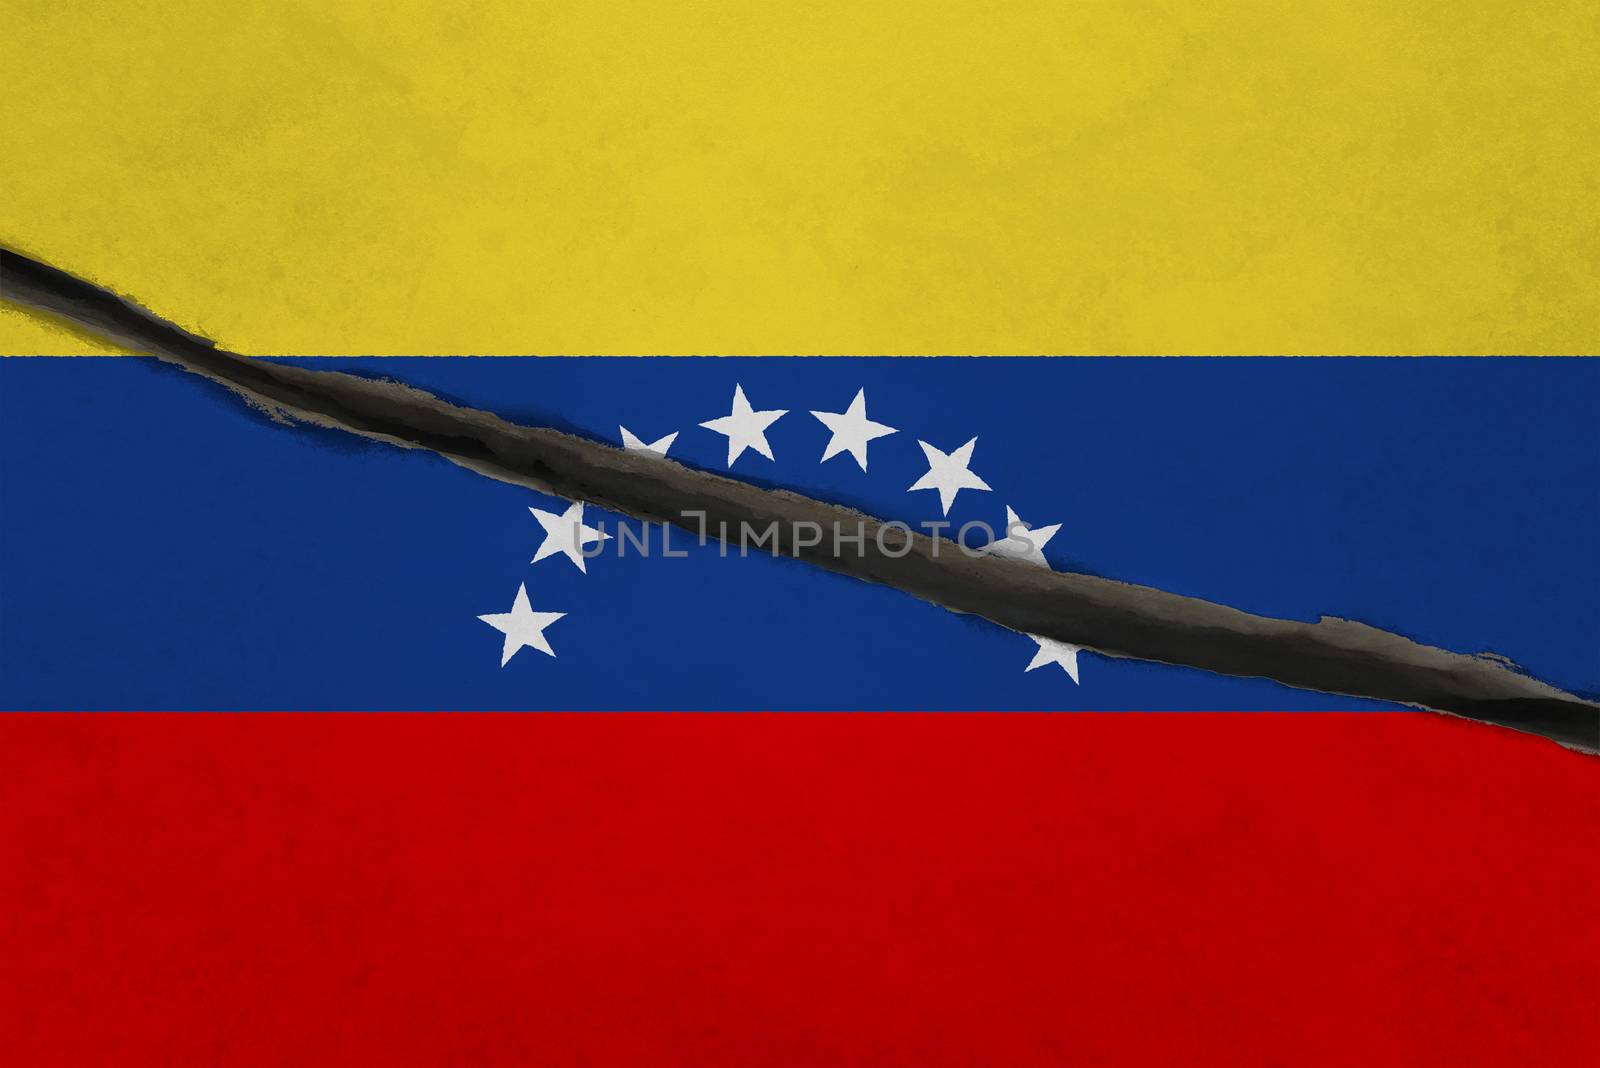 Venezuela flag cracked. Patriotic background. National flag of Venezuela